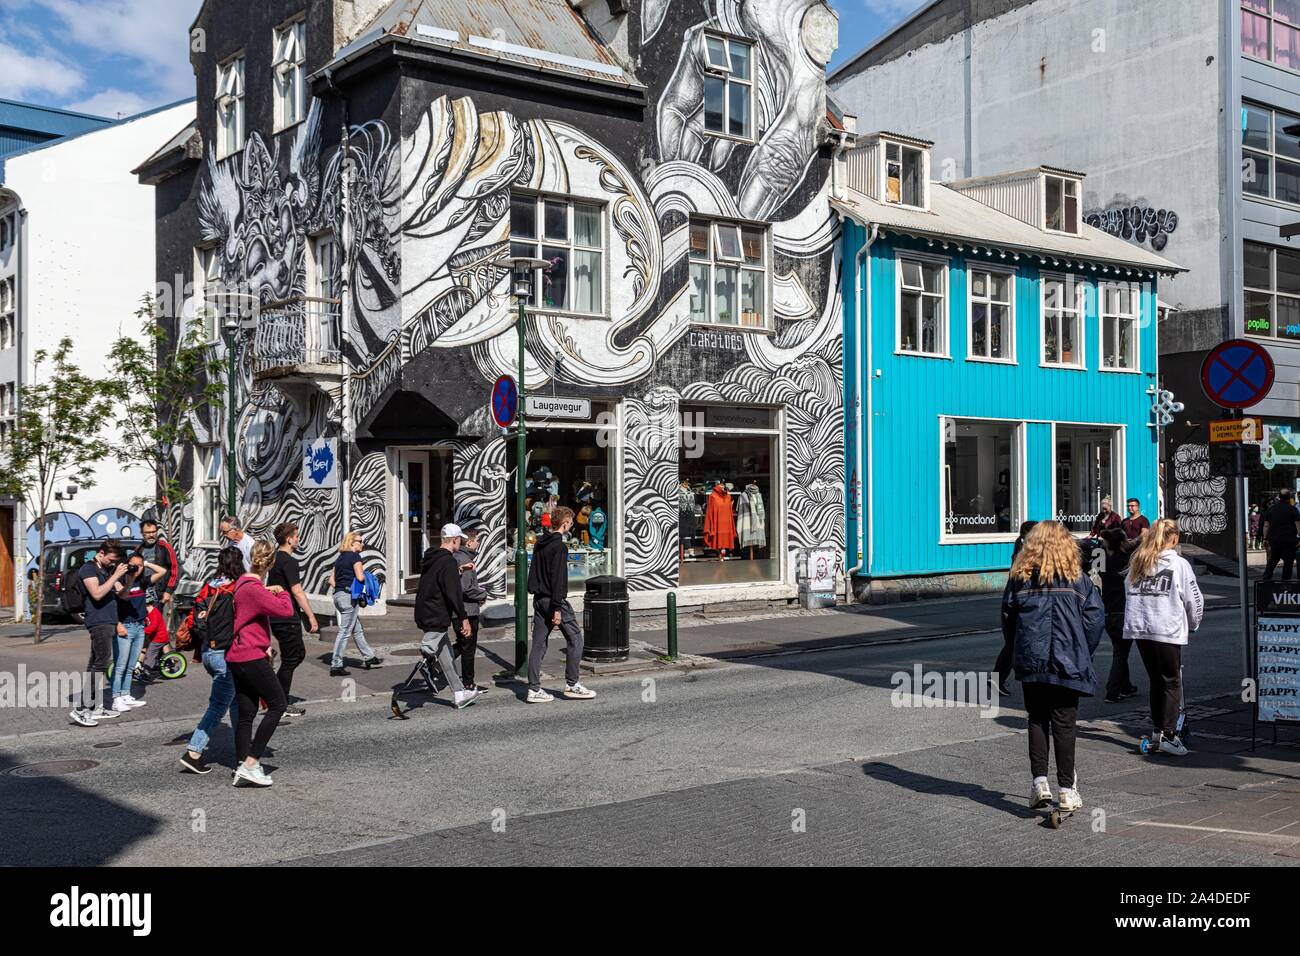 Tienda CARATOES, la pintura de la pared en el moderno centro de la ciudad, en Reikiavik, Islandia, Europa Foto de stock